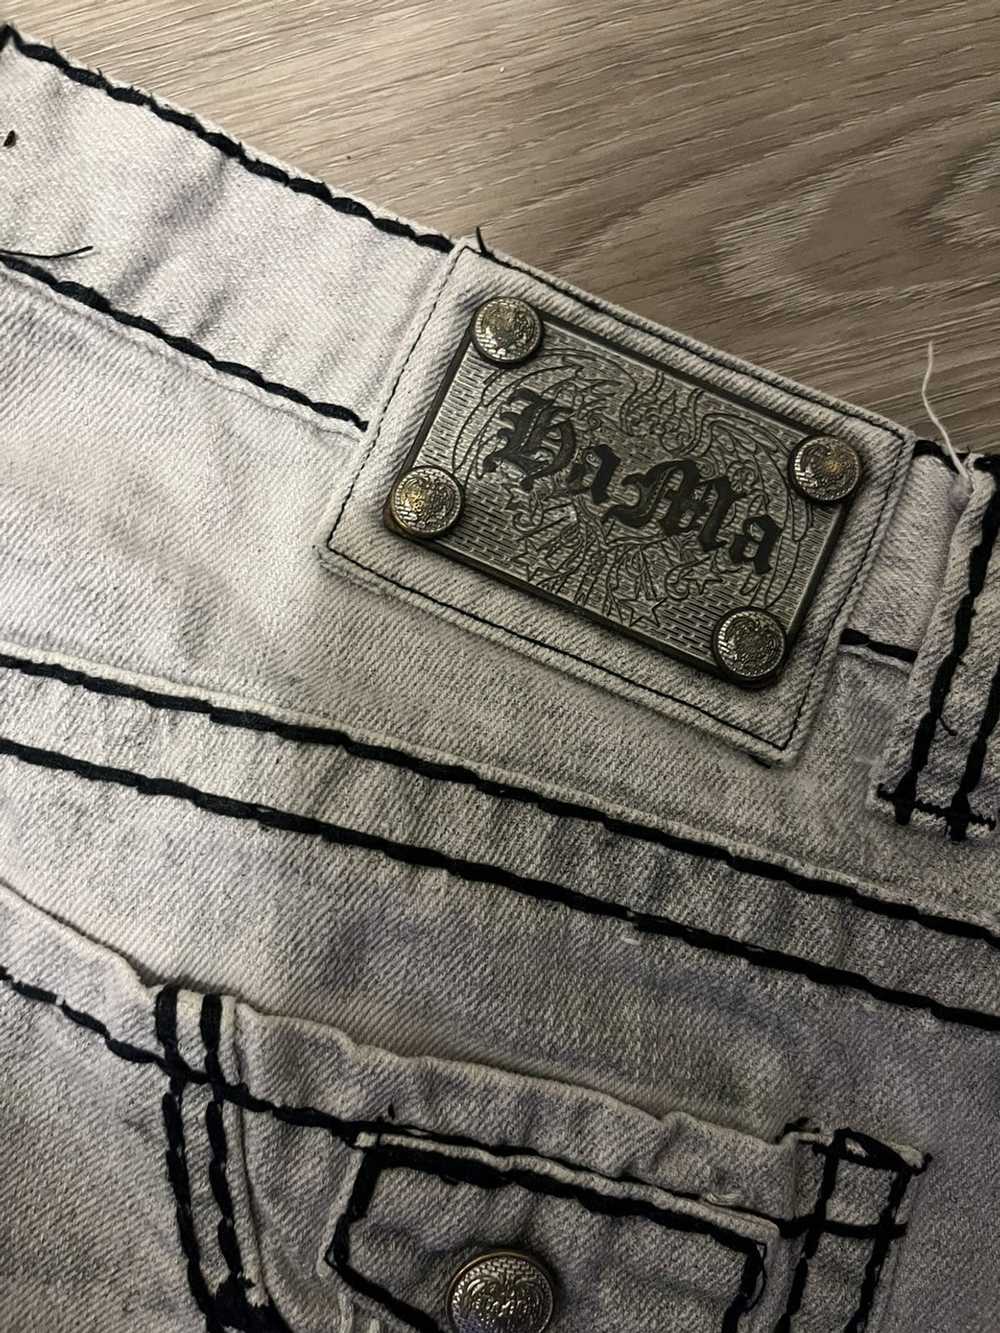 Streetwear Size 32 jeans - image 4